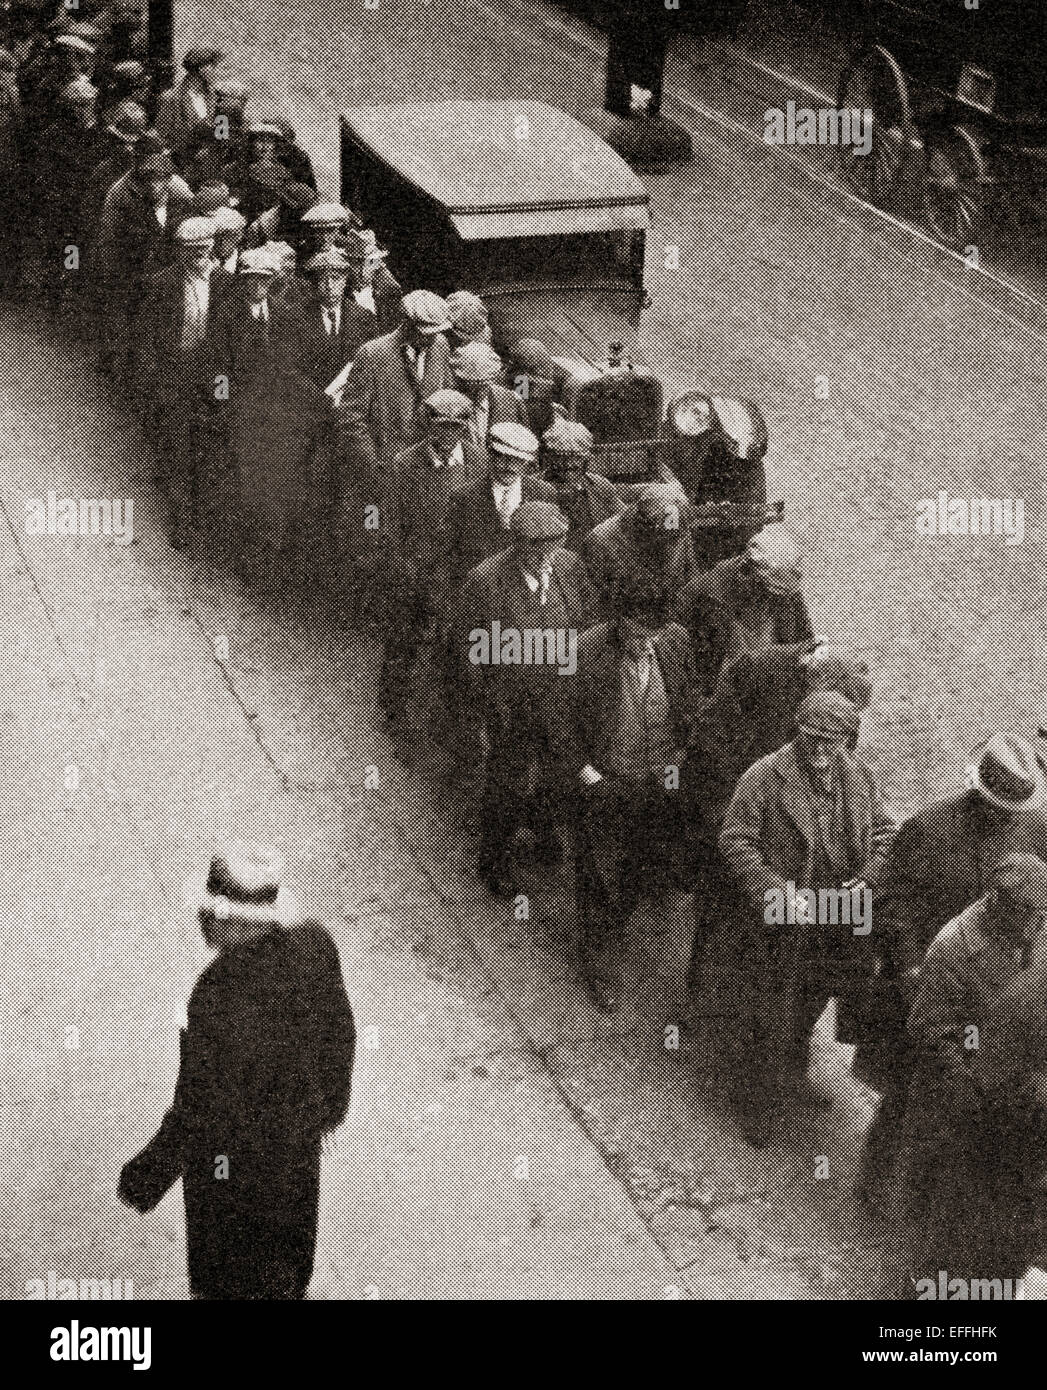 Eine Suppe-Linie an die Bowery Mission, Manhattan, New York City, Vereinigte Staaten von Amerika während der großen Depression. Stockfoto